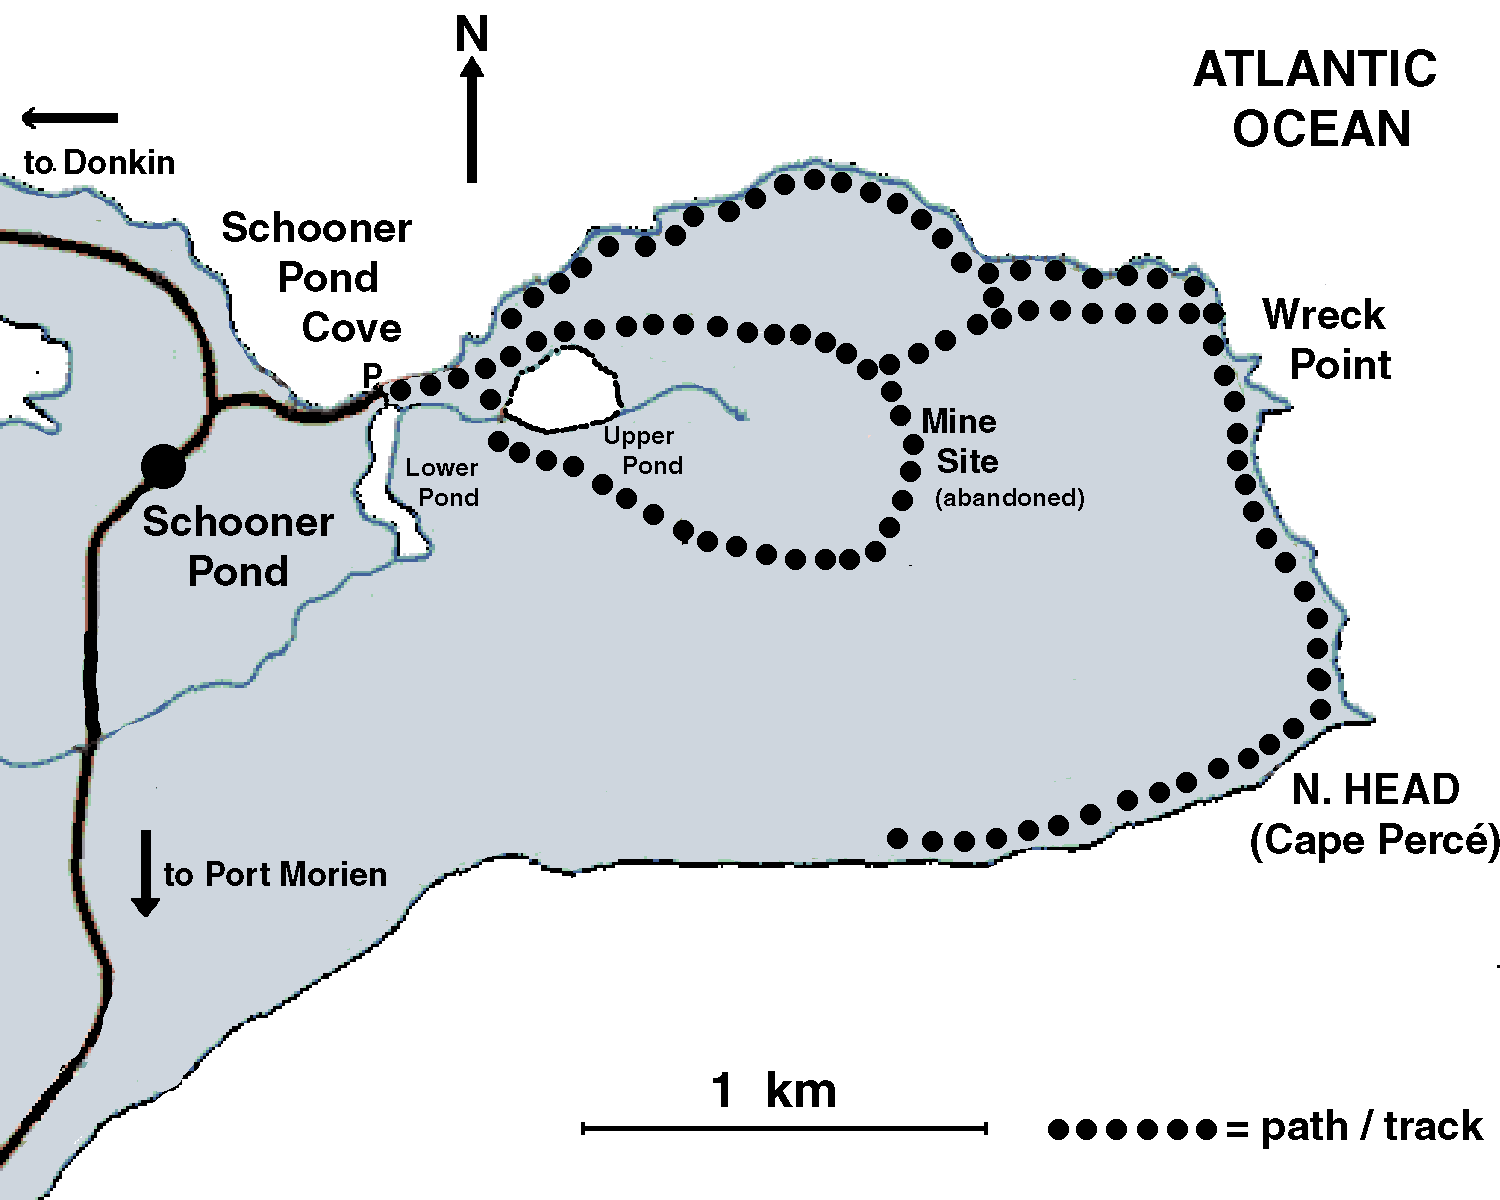 Map of Schooner Pond area